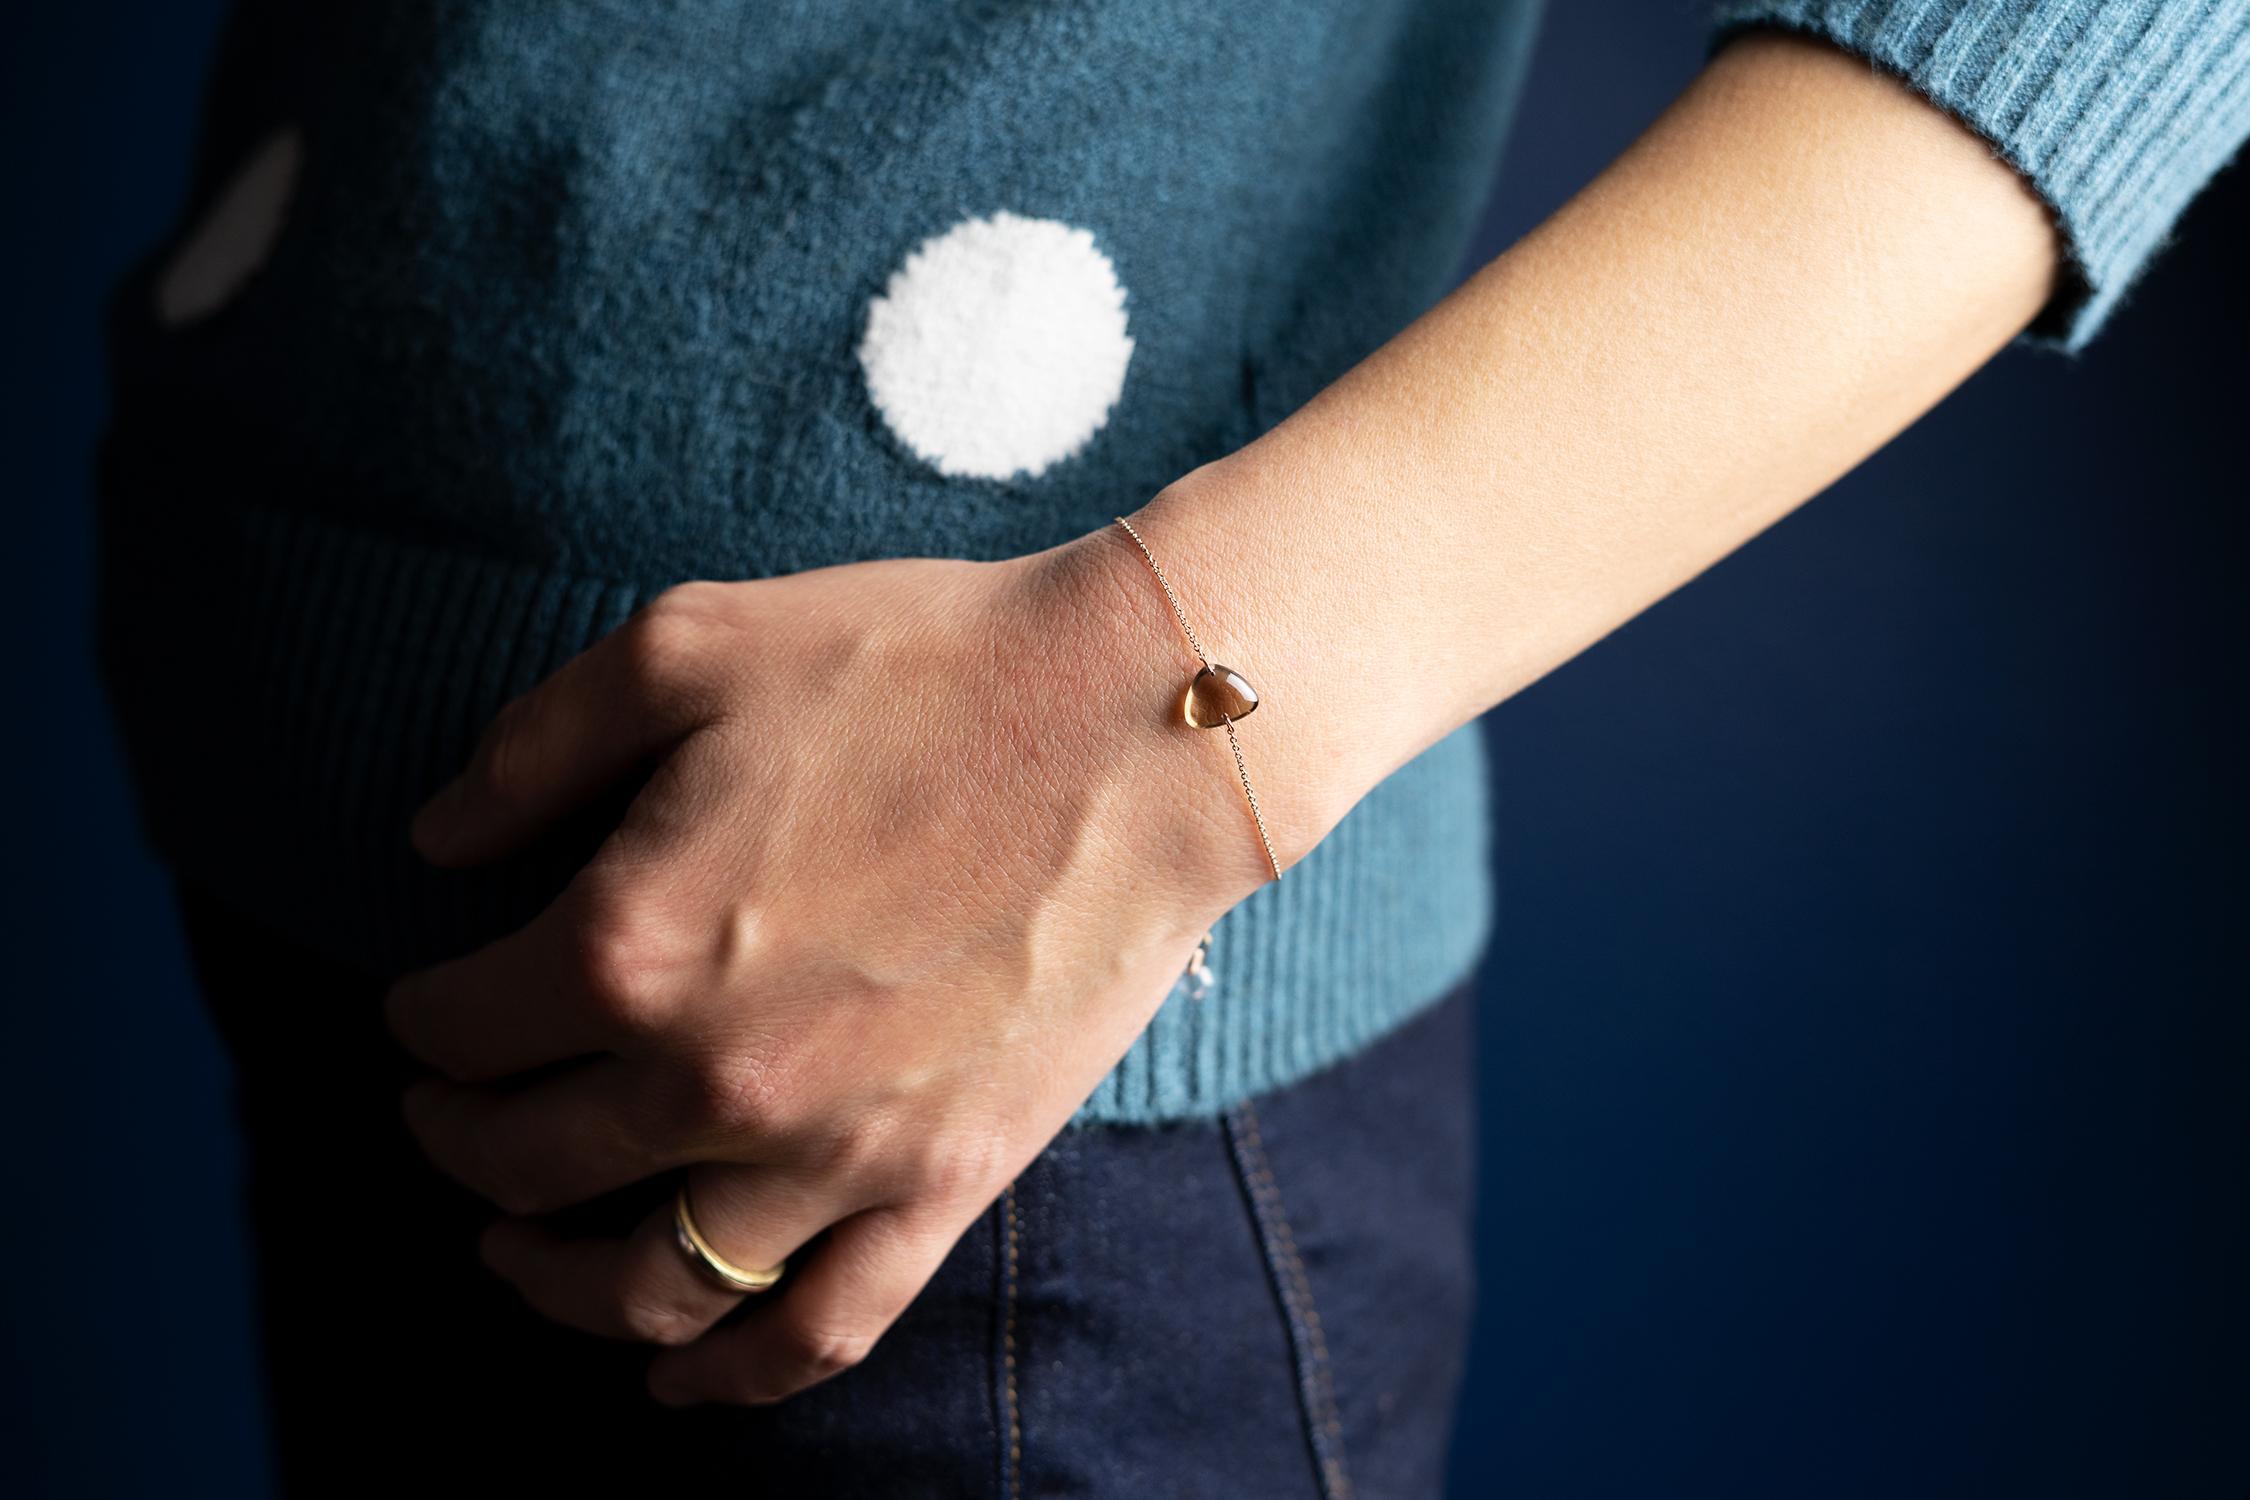 Rebecca Li conçoit Mindfulness. 

Ce bracelet minimal fait partie de sa collection Crystal Links. Inspiré de la géométrie sacrée, il est conçu pour nous aider à nous souvenir de la nature mystique de notre réalité et nous rappeler de trouver notre